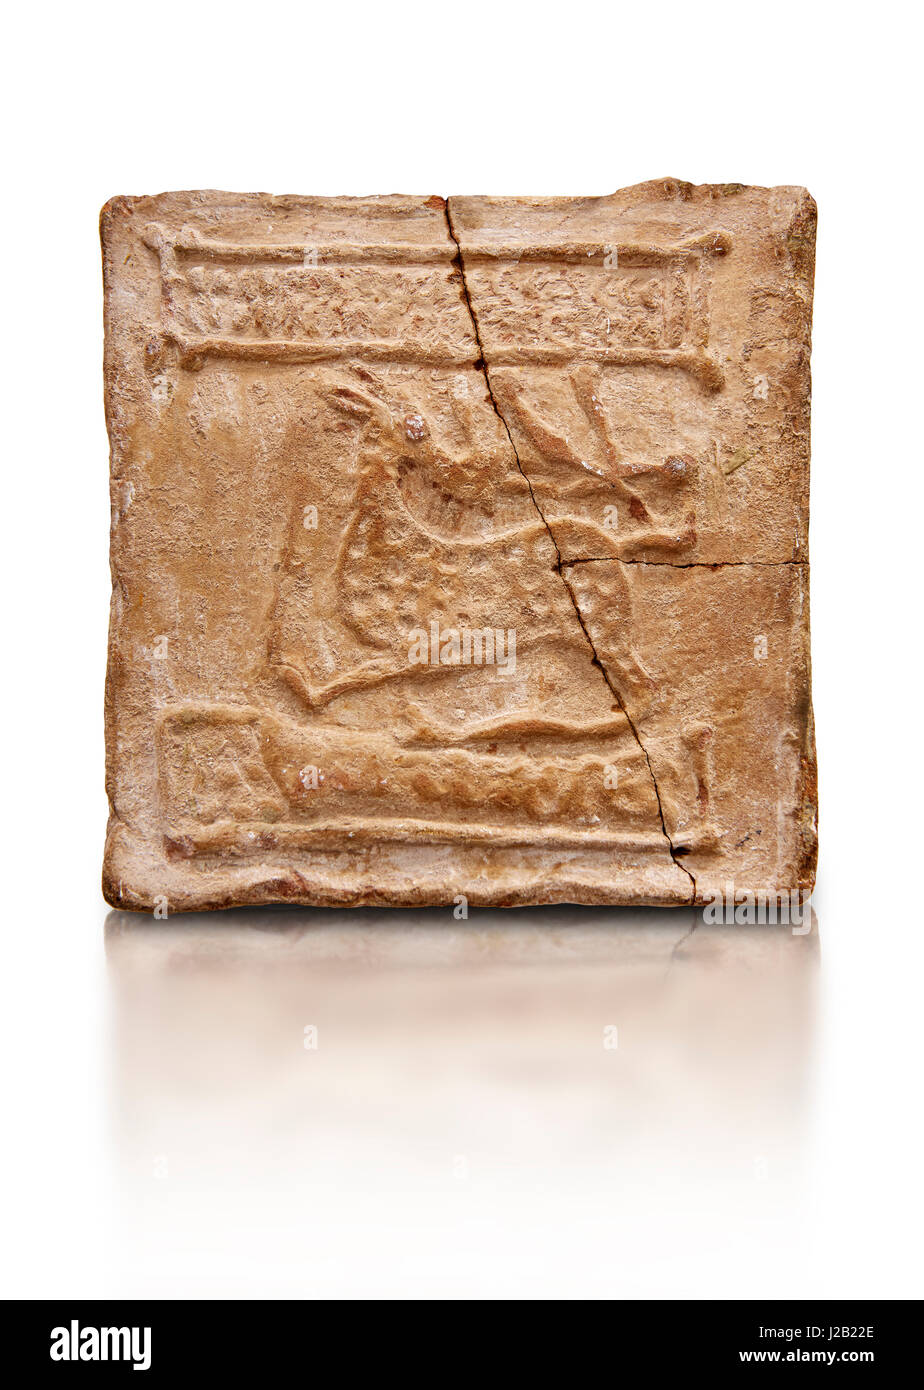 6th-7secolo cristiano bizantino piastrelle in terracotta raffigurante un cervo - prodotte in Byzacen. Il Bardo Museo Nazionale di Tunisi Foto Stock